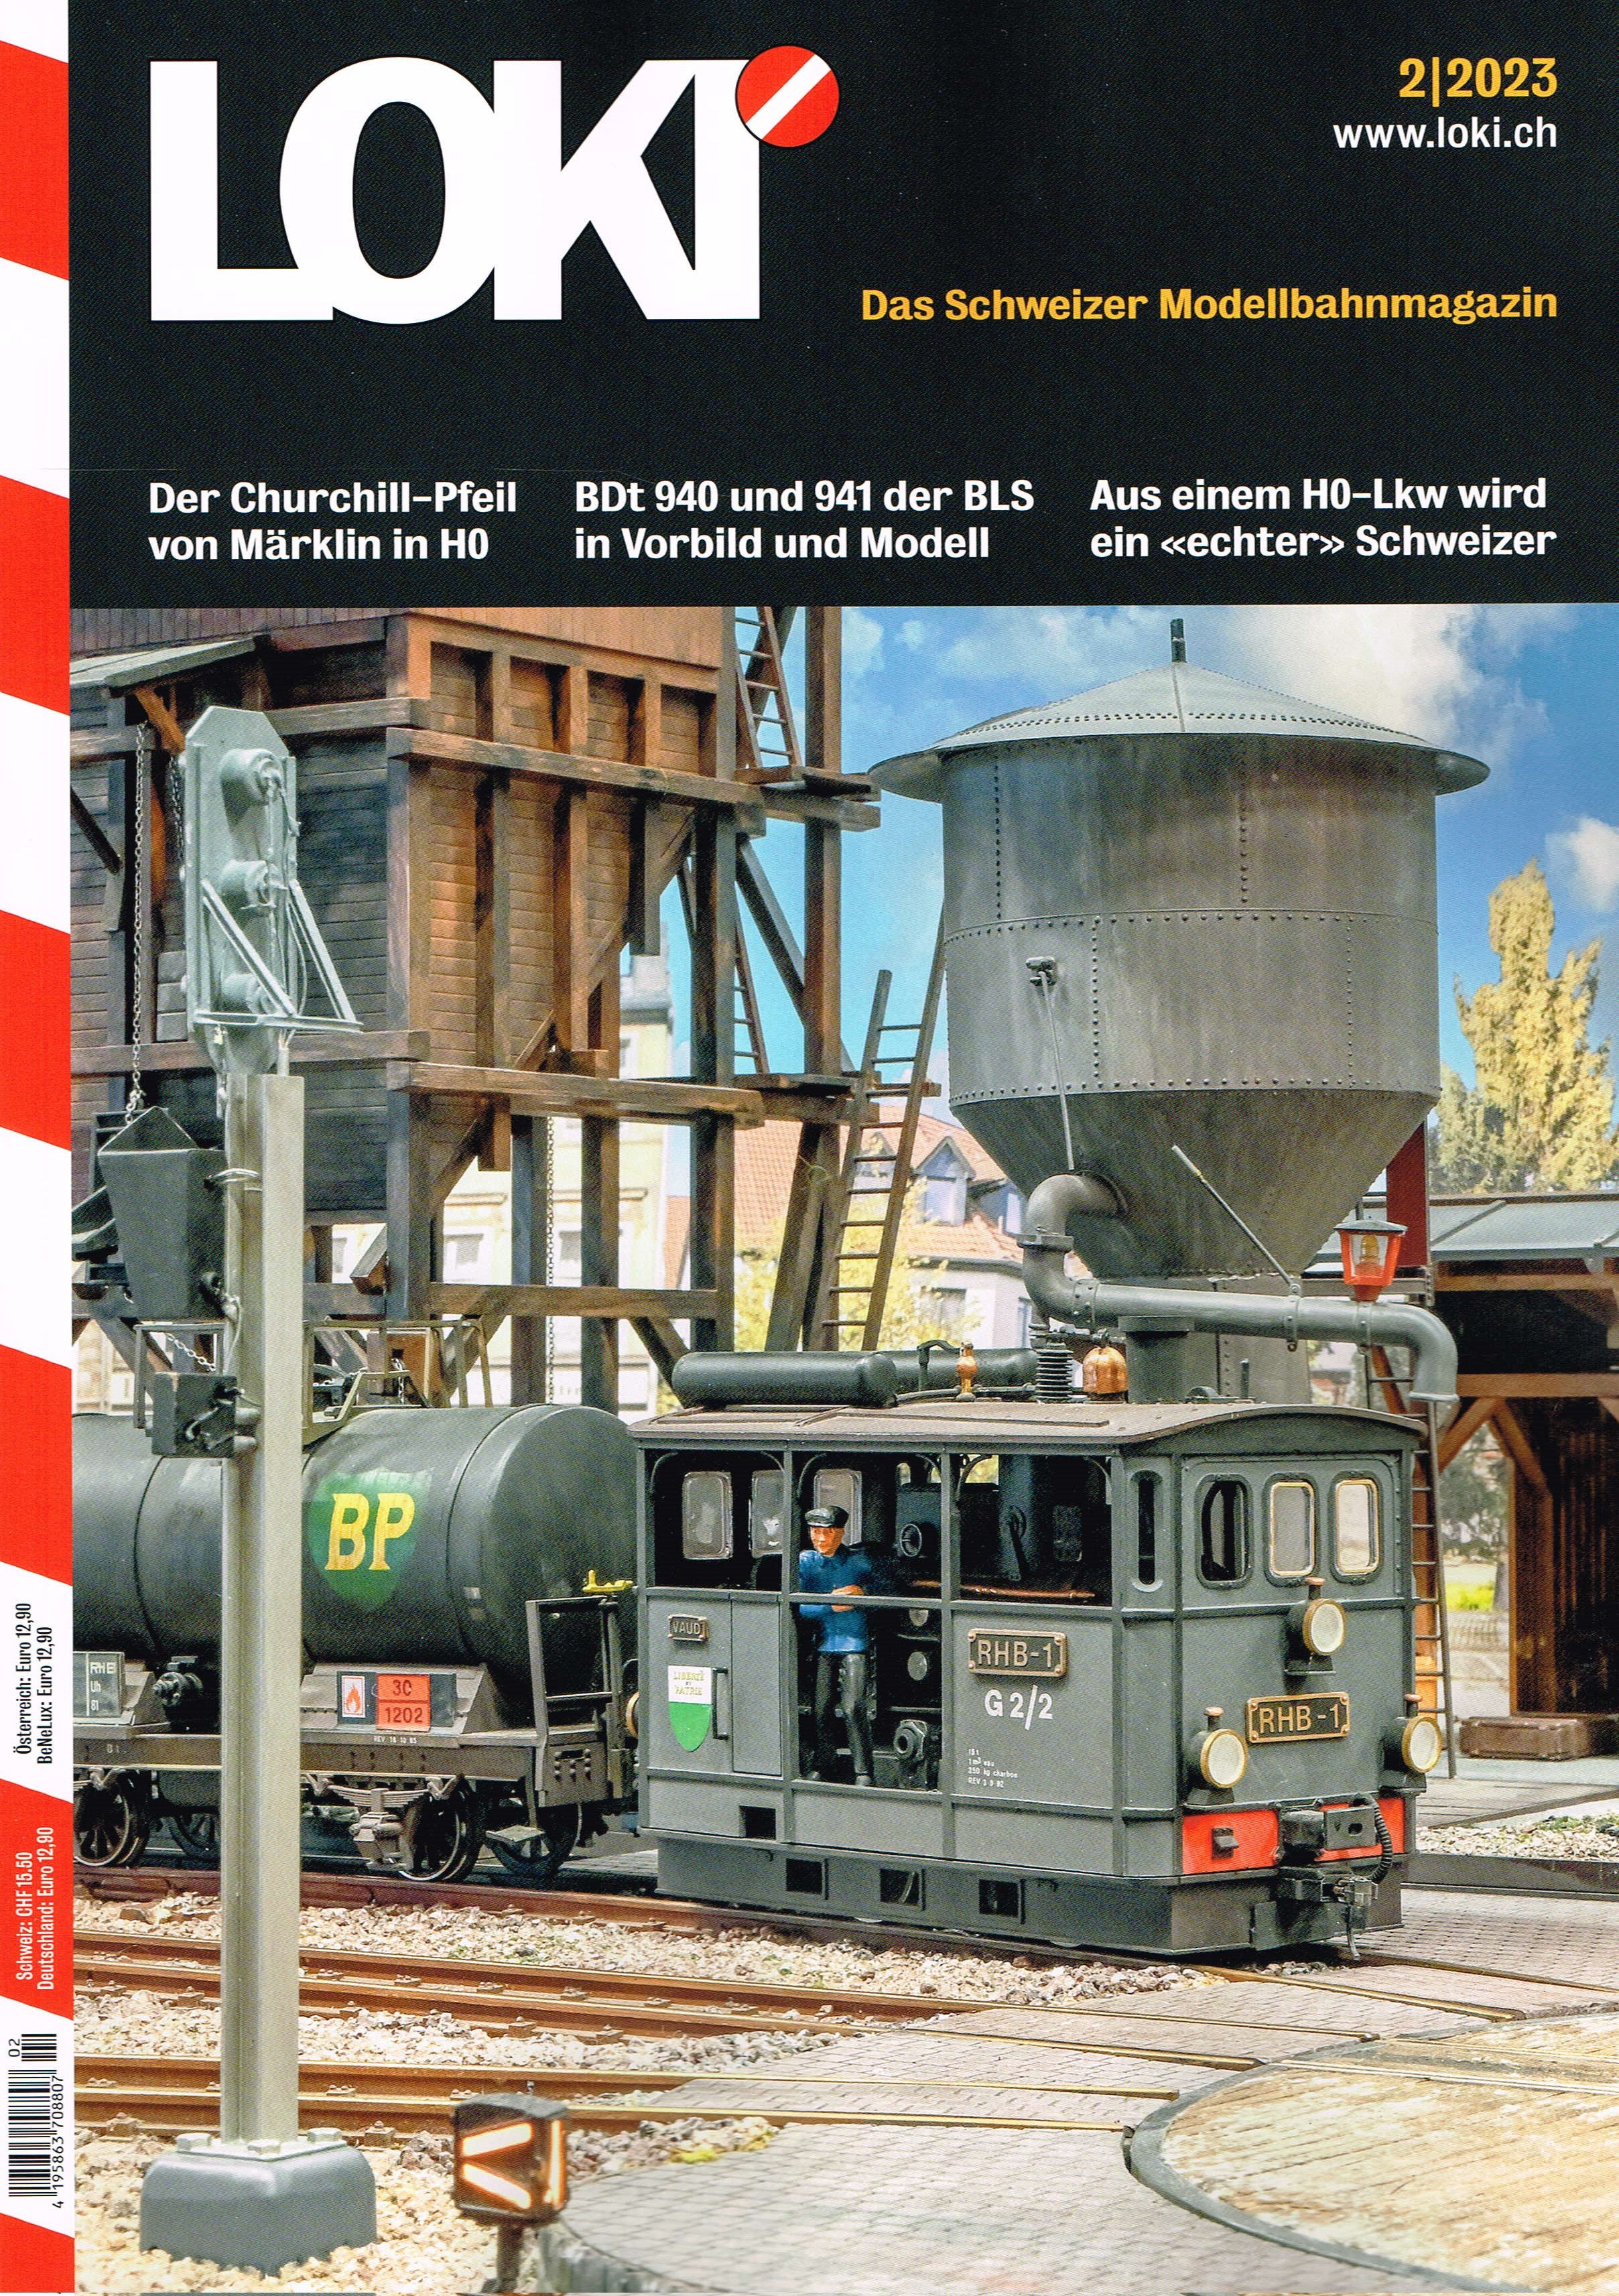 LOKI Das Schweizer Modellbahnmagazin 2/2023 wurde heute ausgeliefert. 